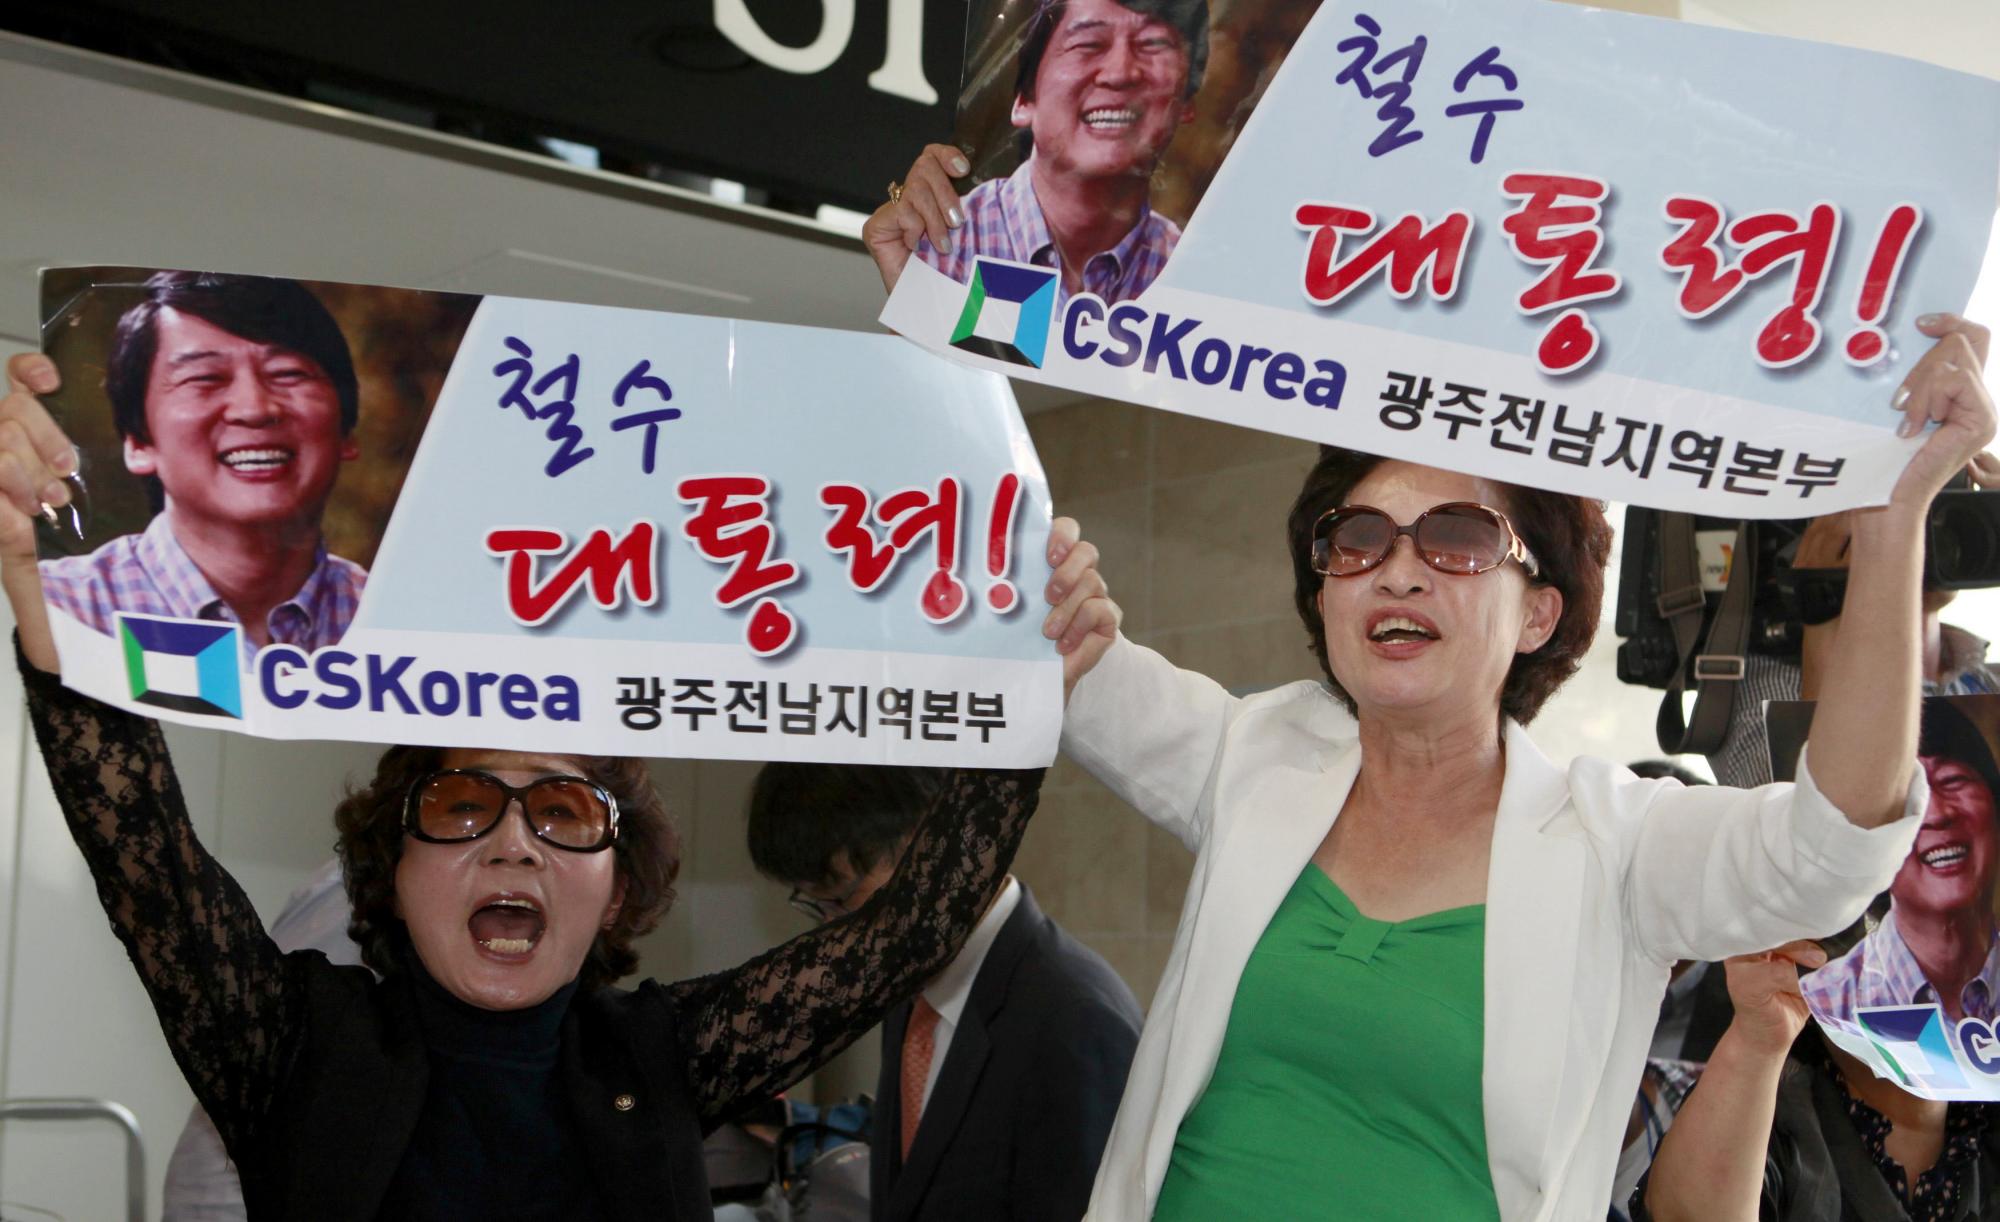 韩杀毒软件大王宣布竞选总统 “三无男人”欲挑战前总统之女